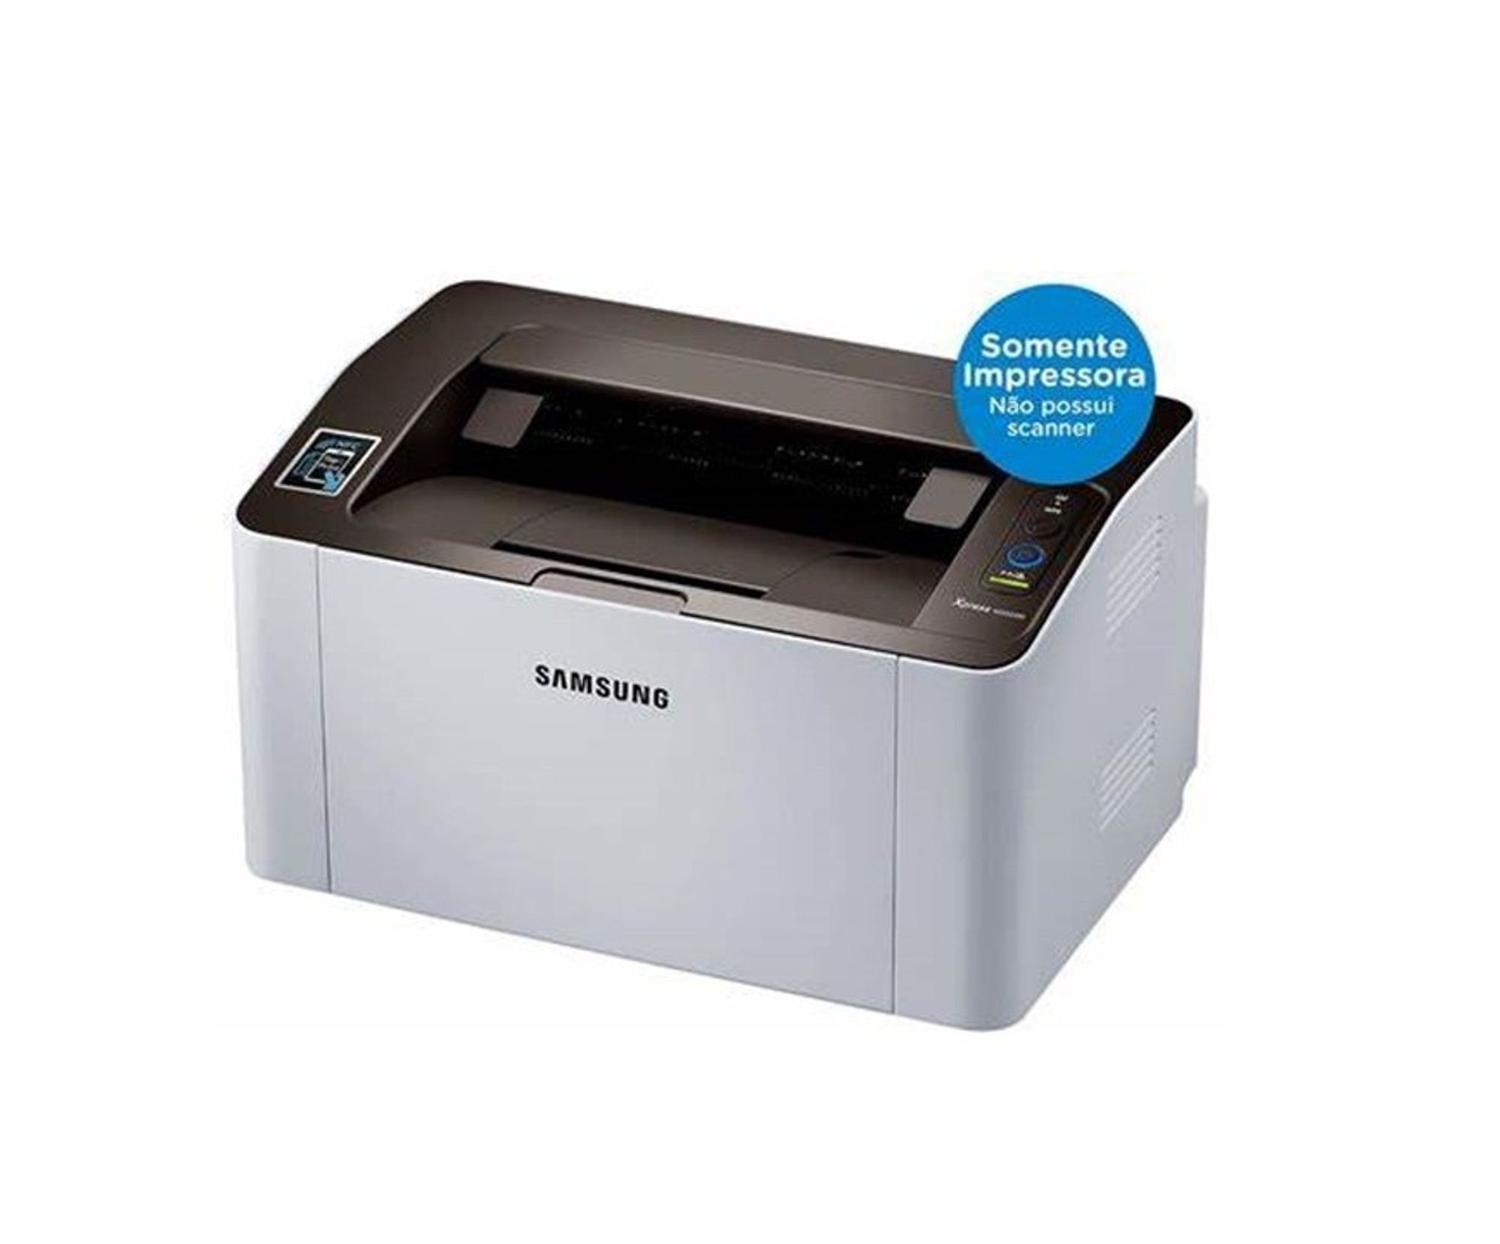 Samsung m2020. Принтер самсунг Xpress m2020. Принтер Samsung m 20 20. Samsung Xpress m2020, m2070.